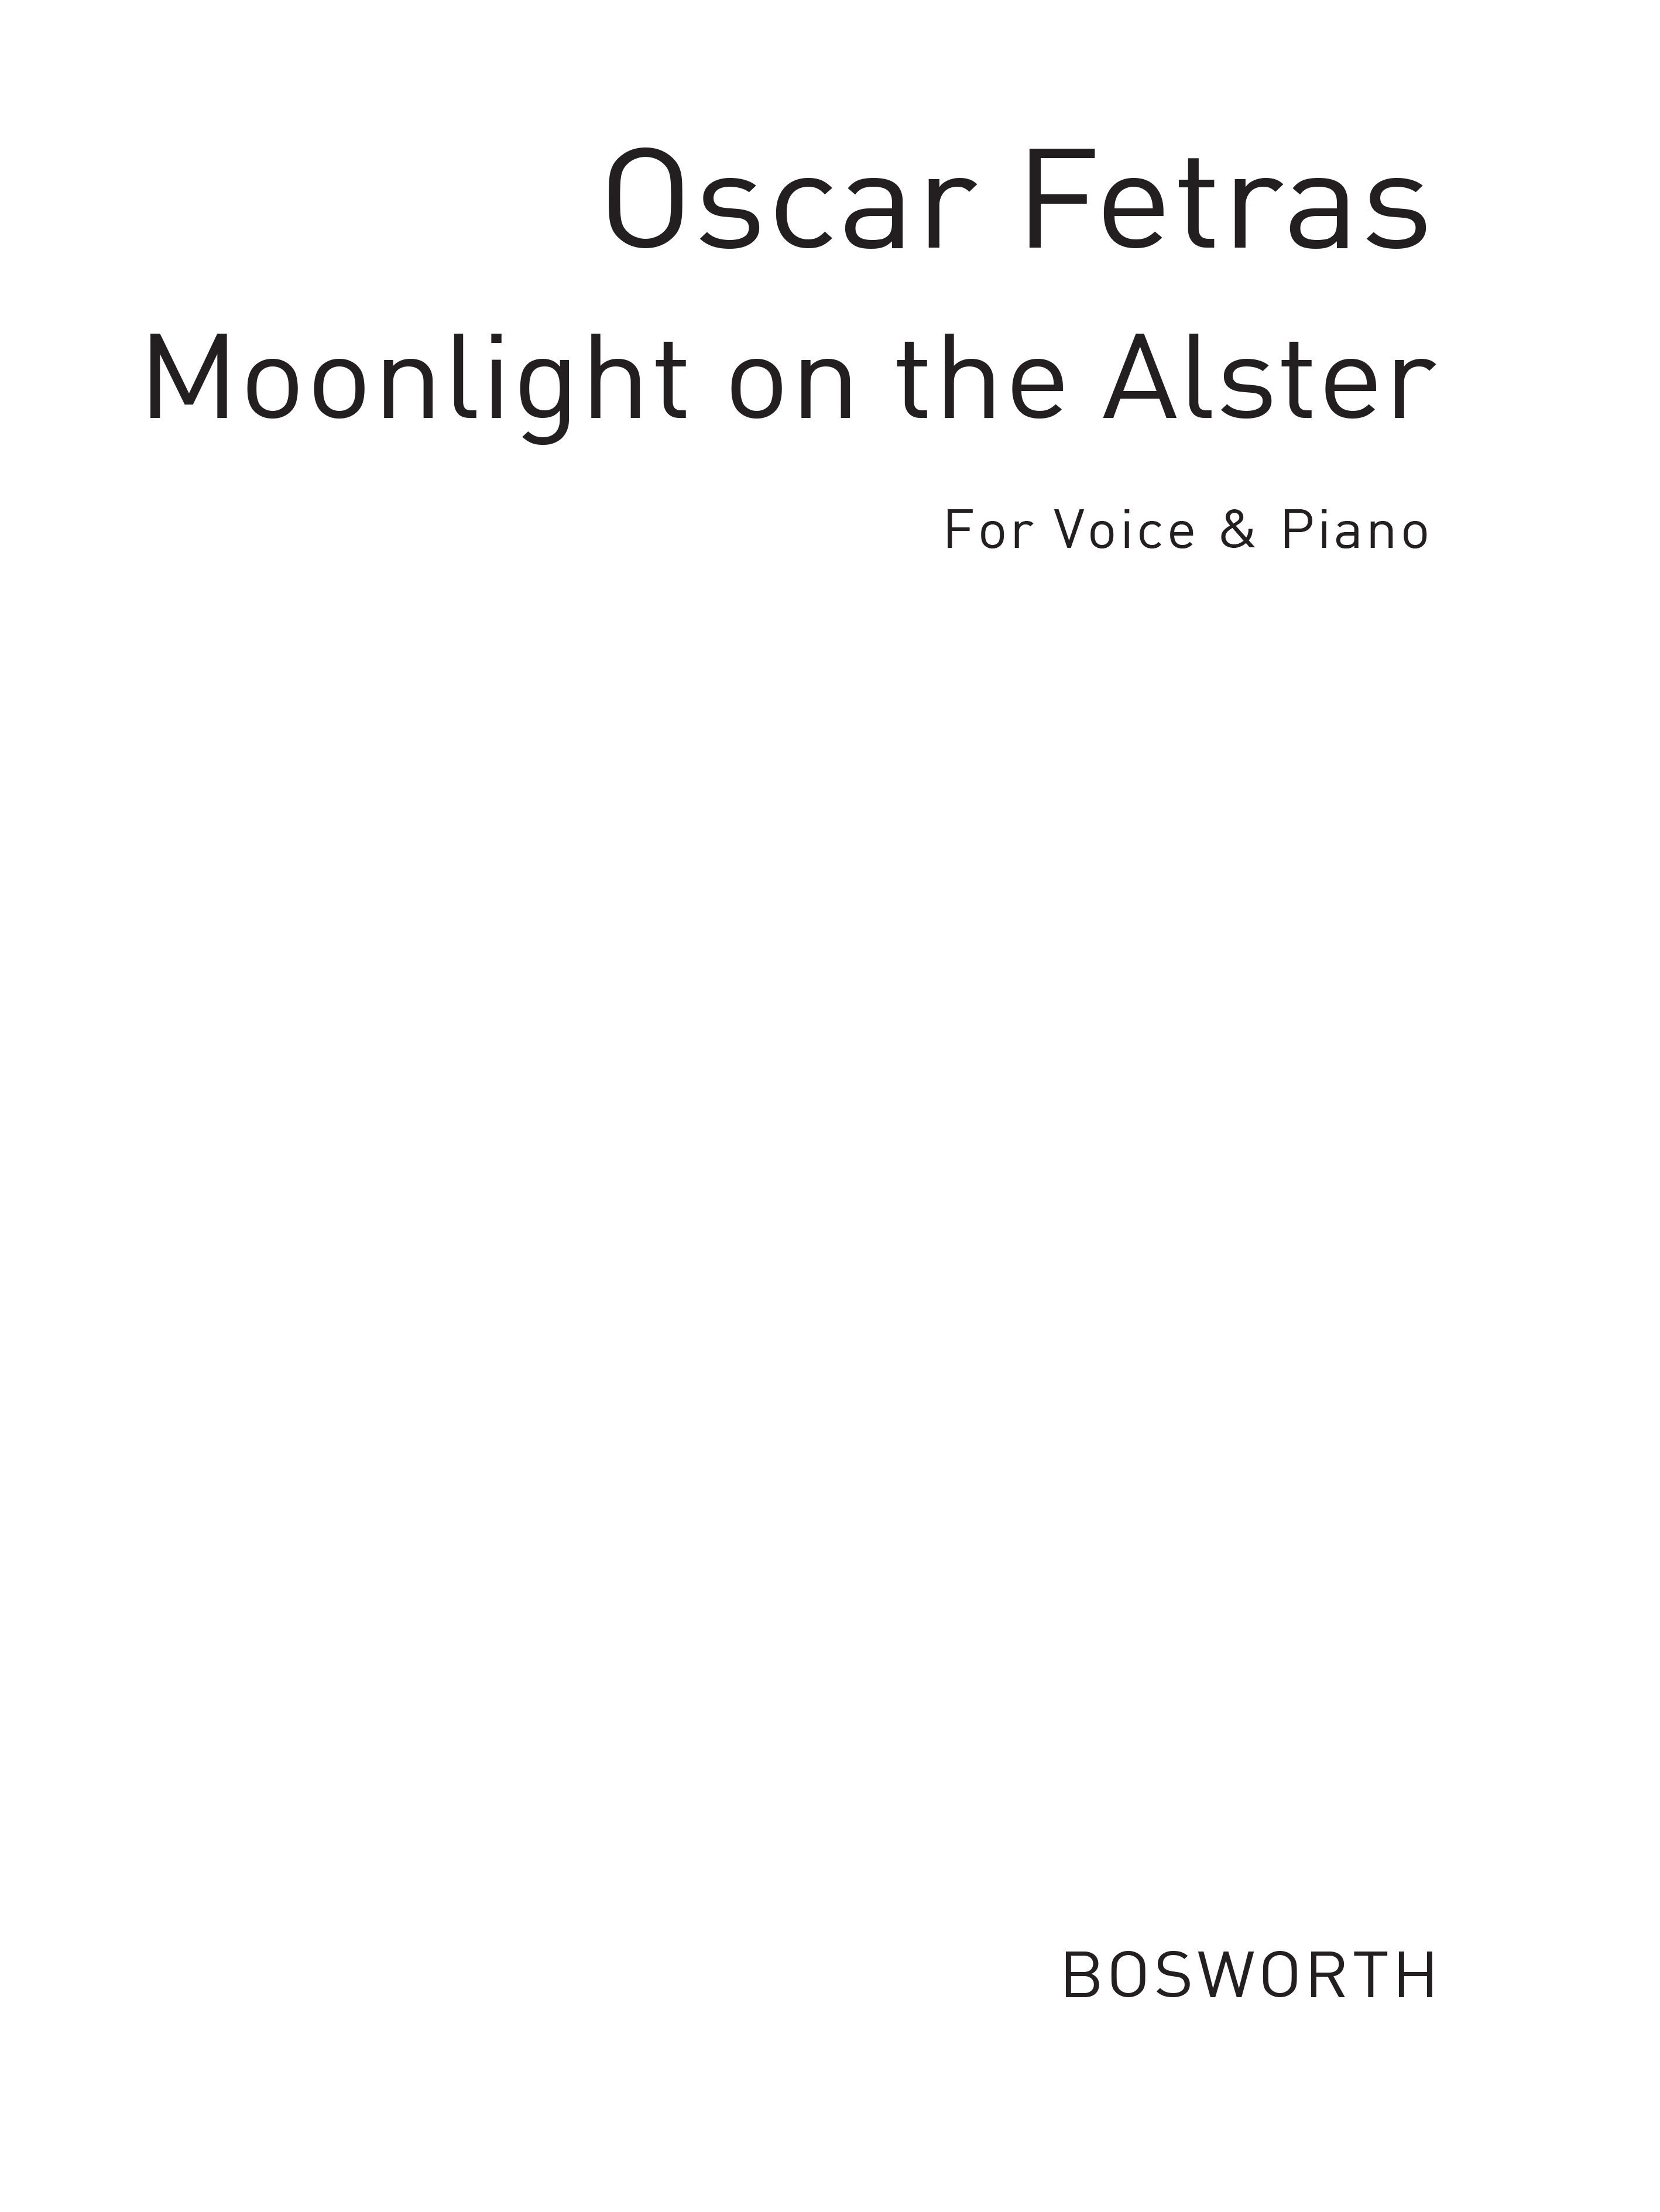 Oscar Fetras: Oscar Fetras: Moonlight On The Alster (Easy Piano): Piano: